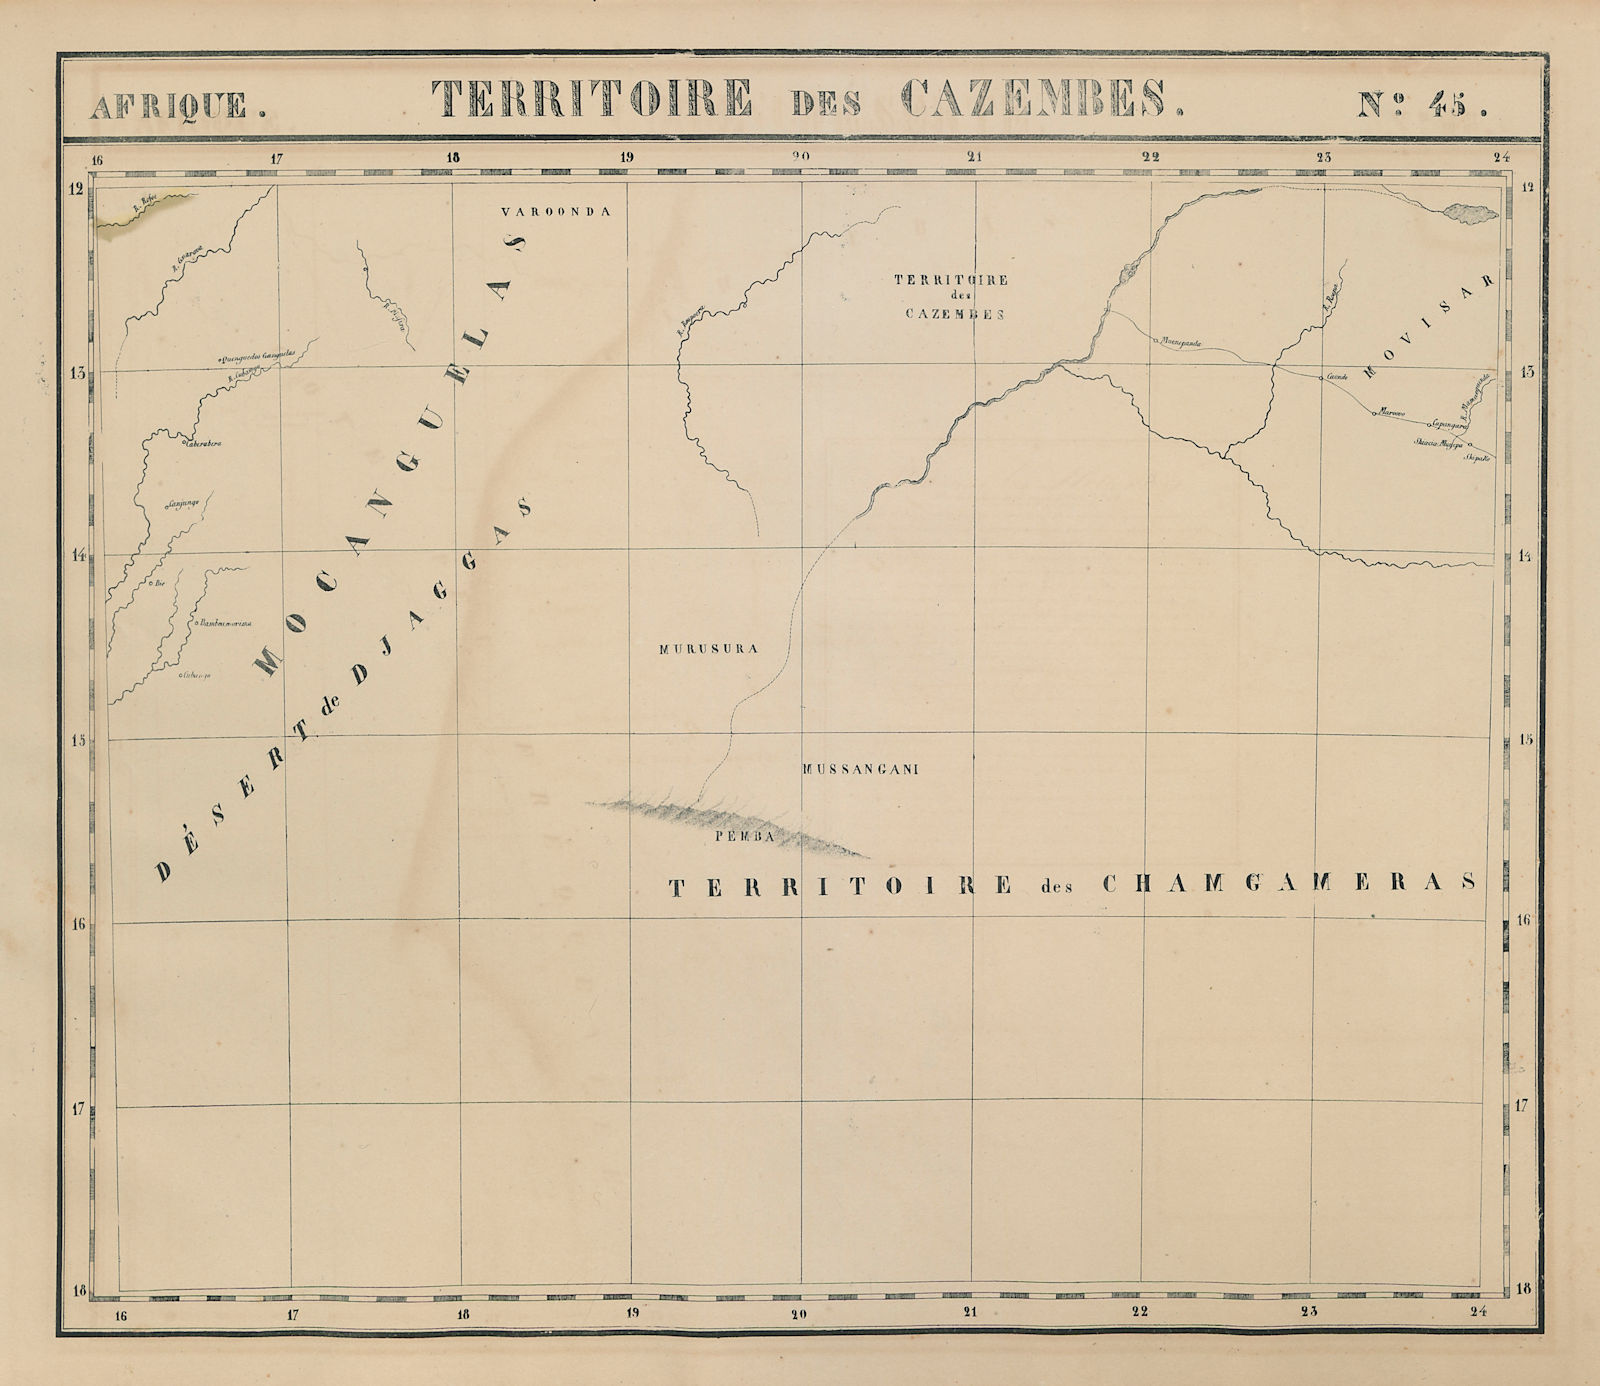 Associate Product Afrique. Territoire des Cazembes #45 SE Angola West Zambia VANDERMAELEN 1827 map